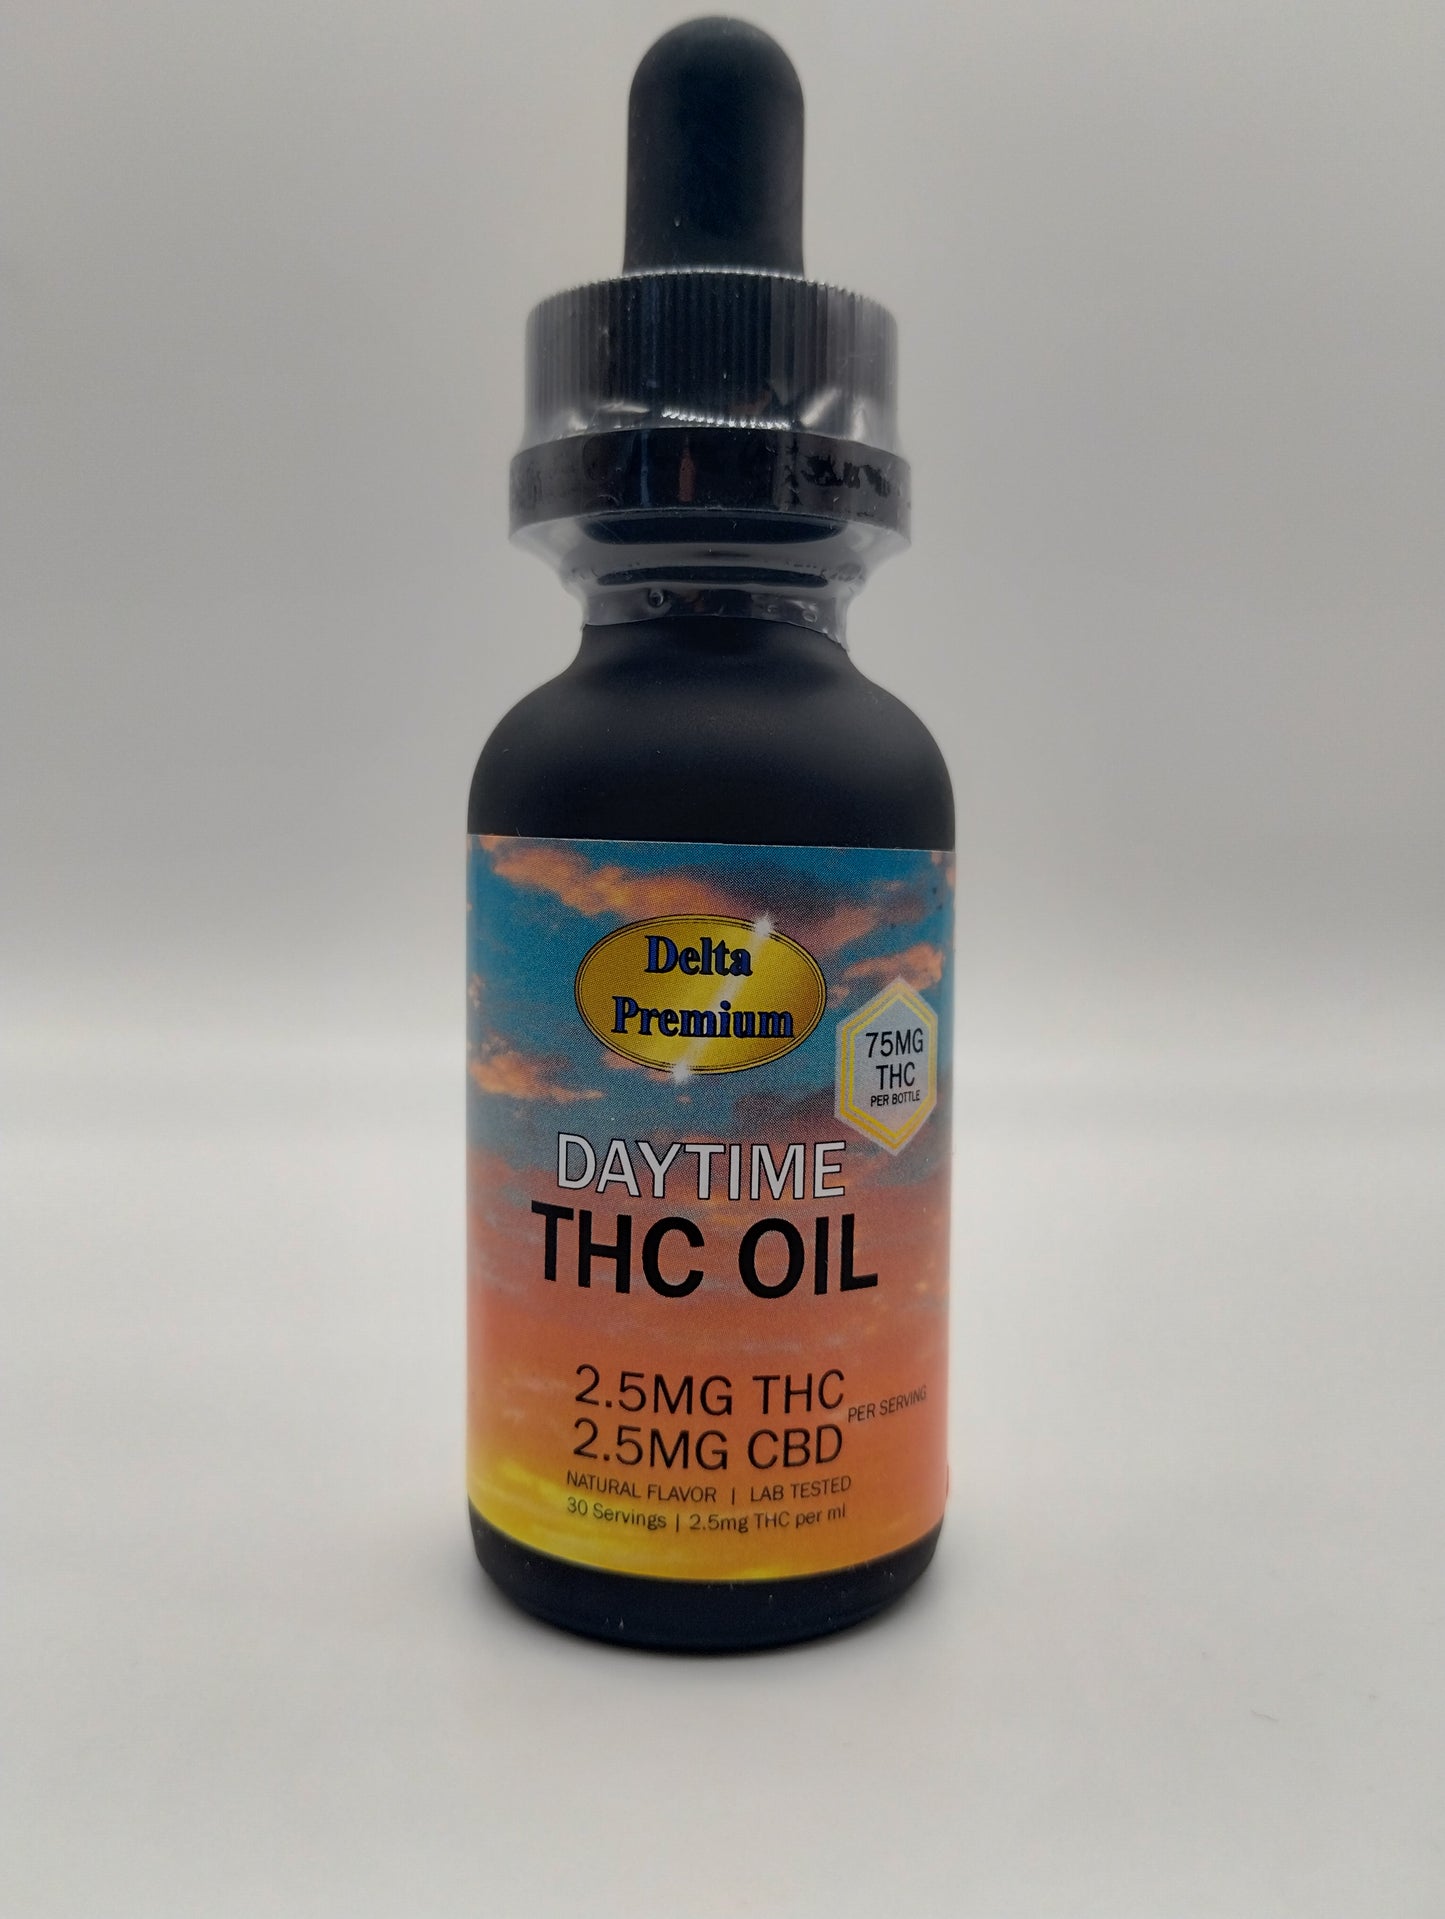 Full spectrum THC/CBD daytime tincture oil 2.5mg 30ml bottle